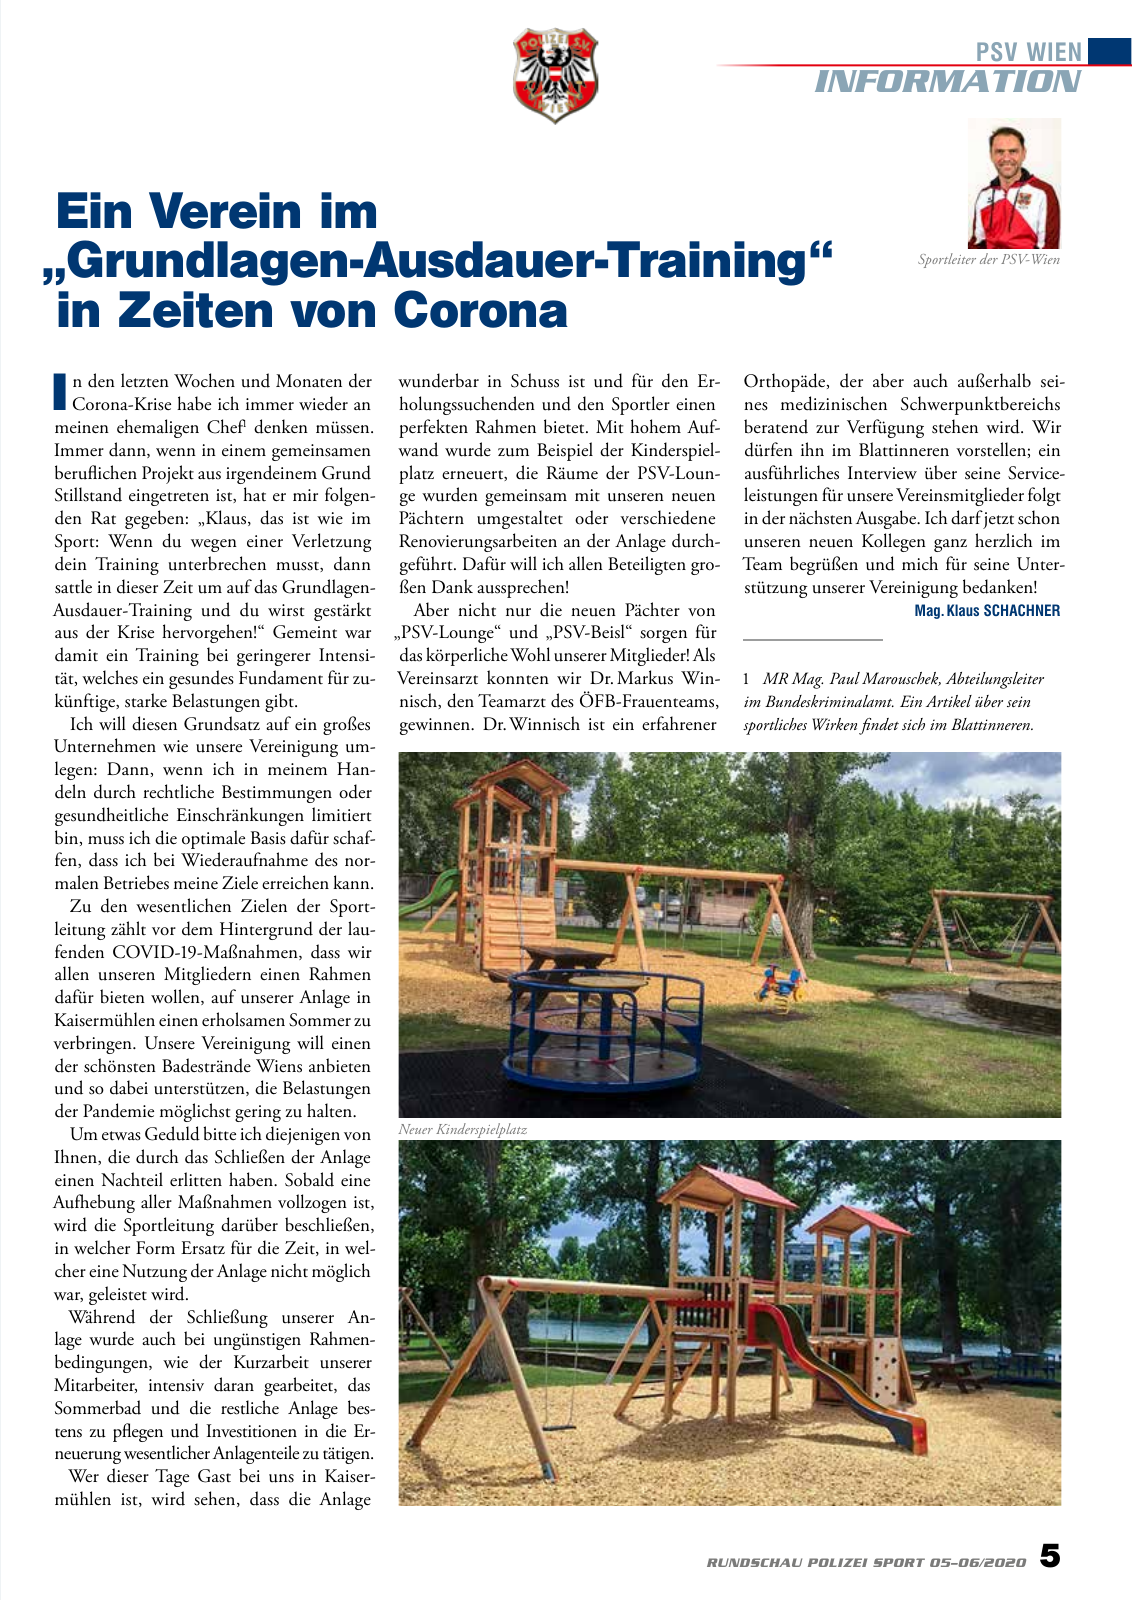 Vorschau Rundschau Polizei Sport 05-06/2020 Seite 5